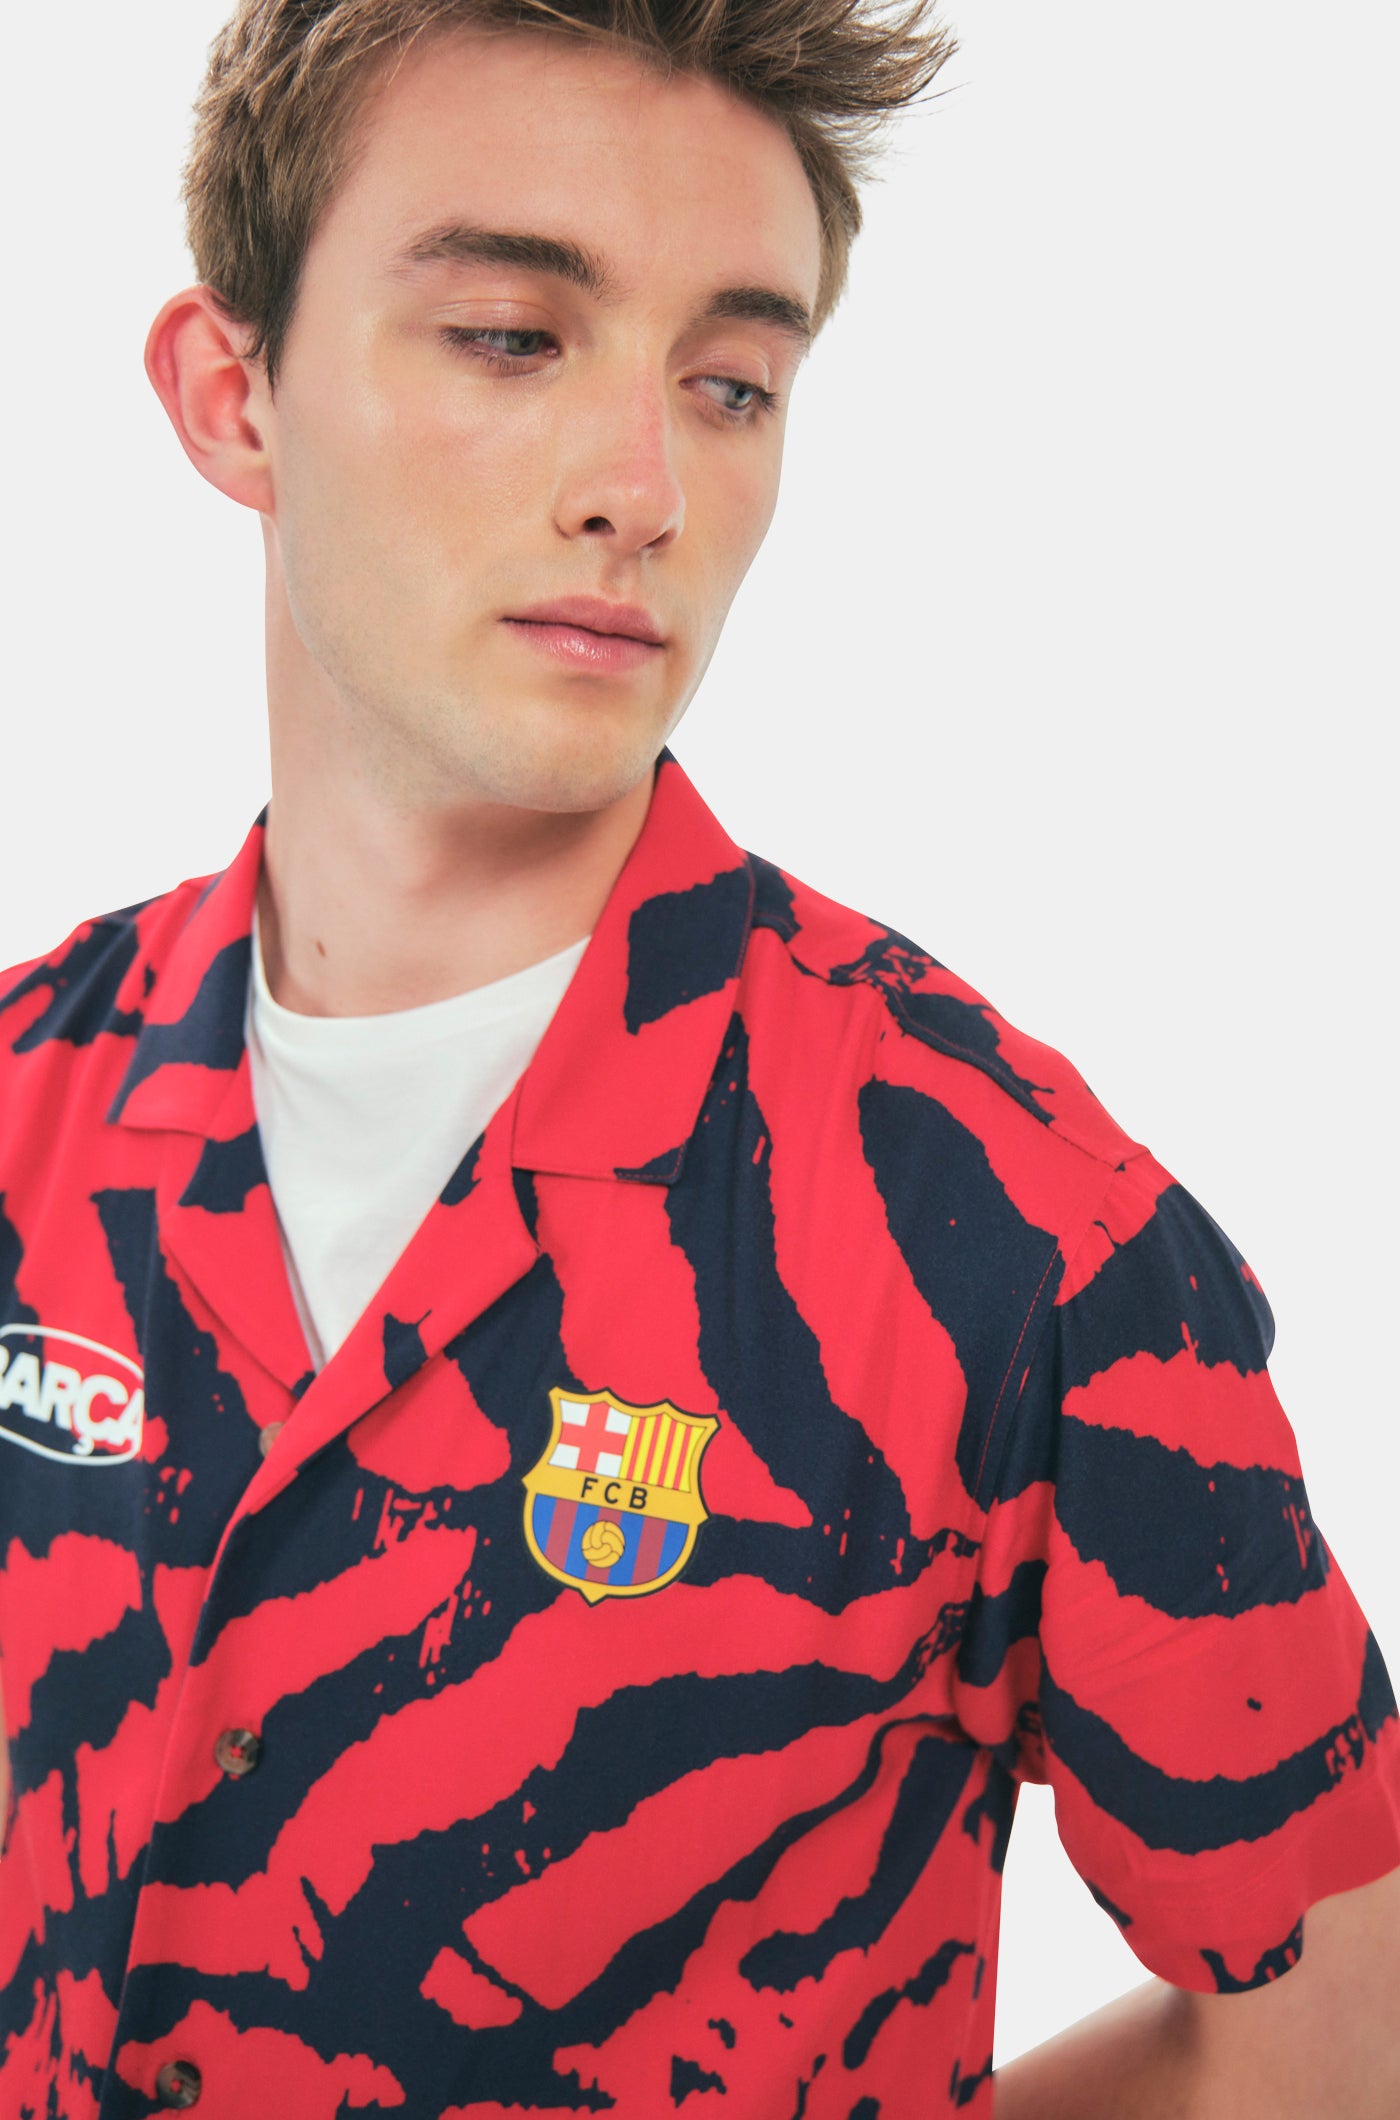 Camisa estamapada Barça